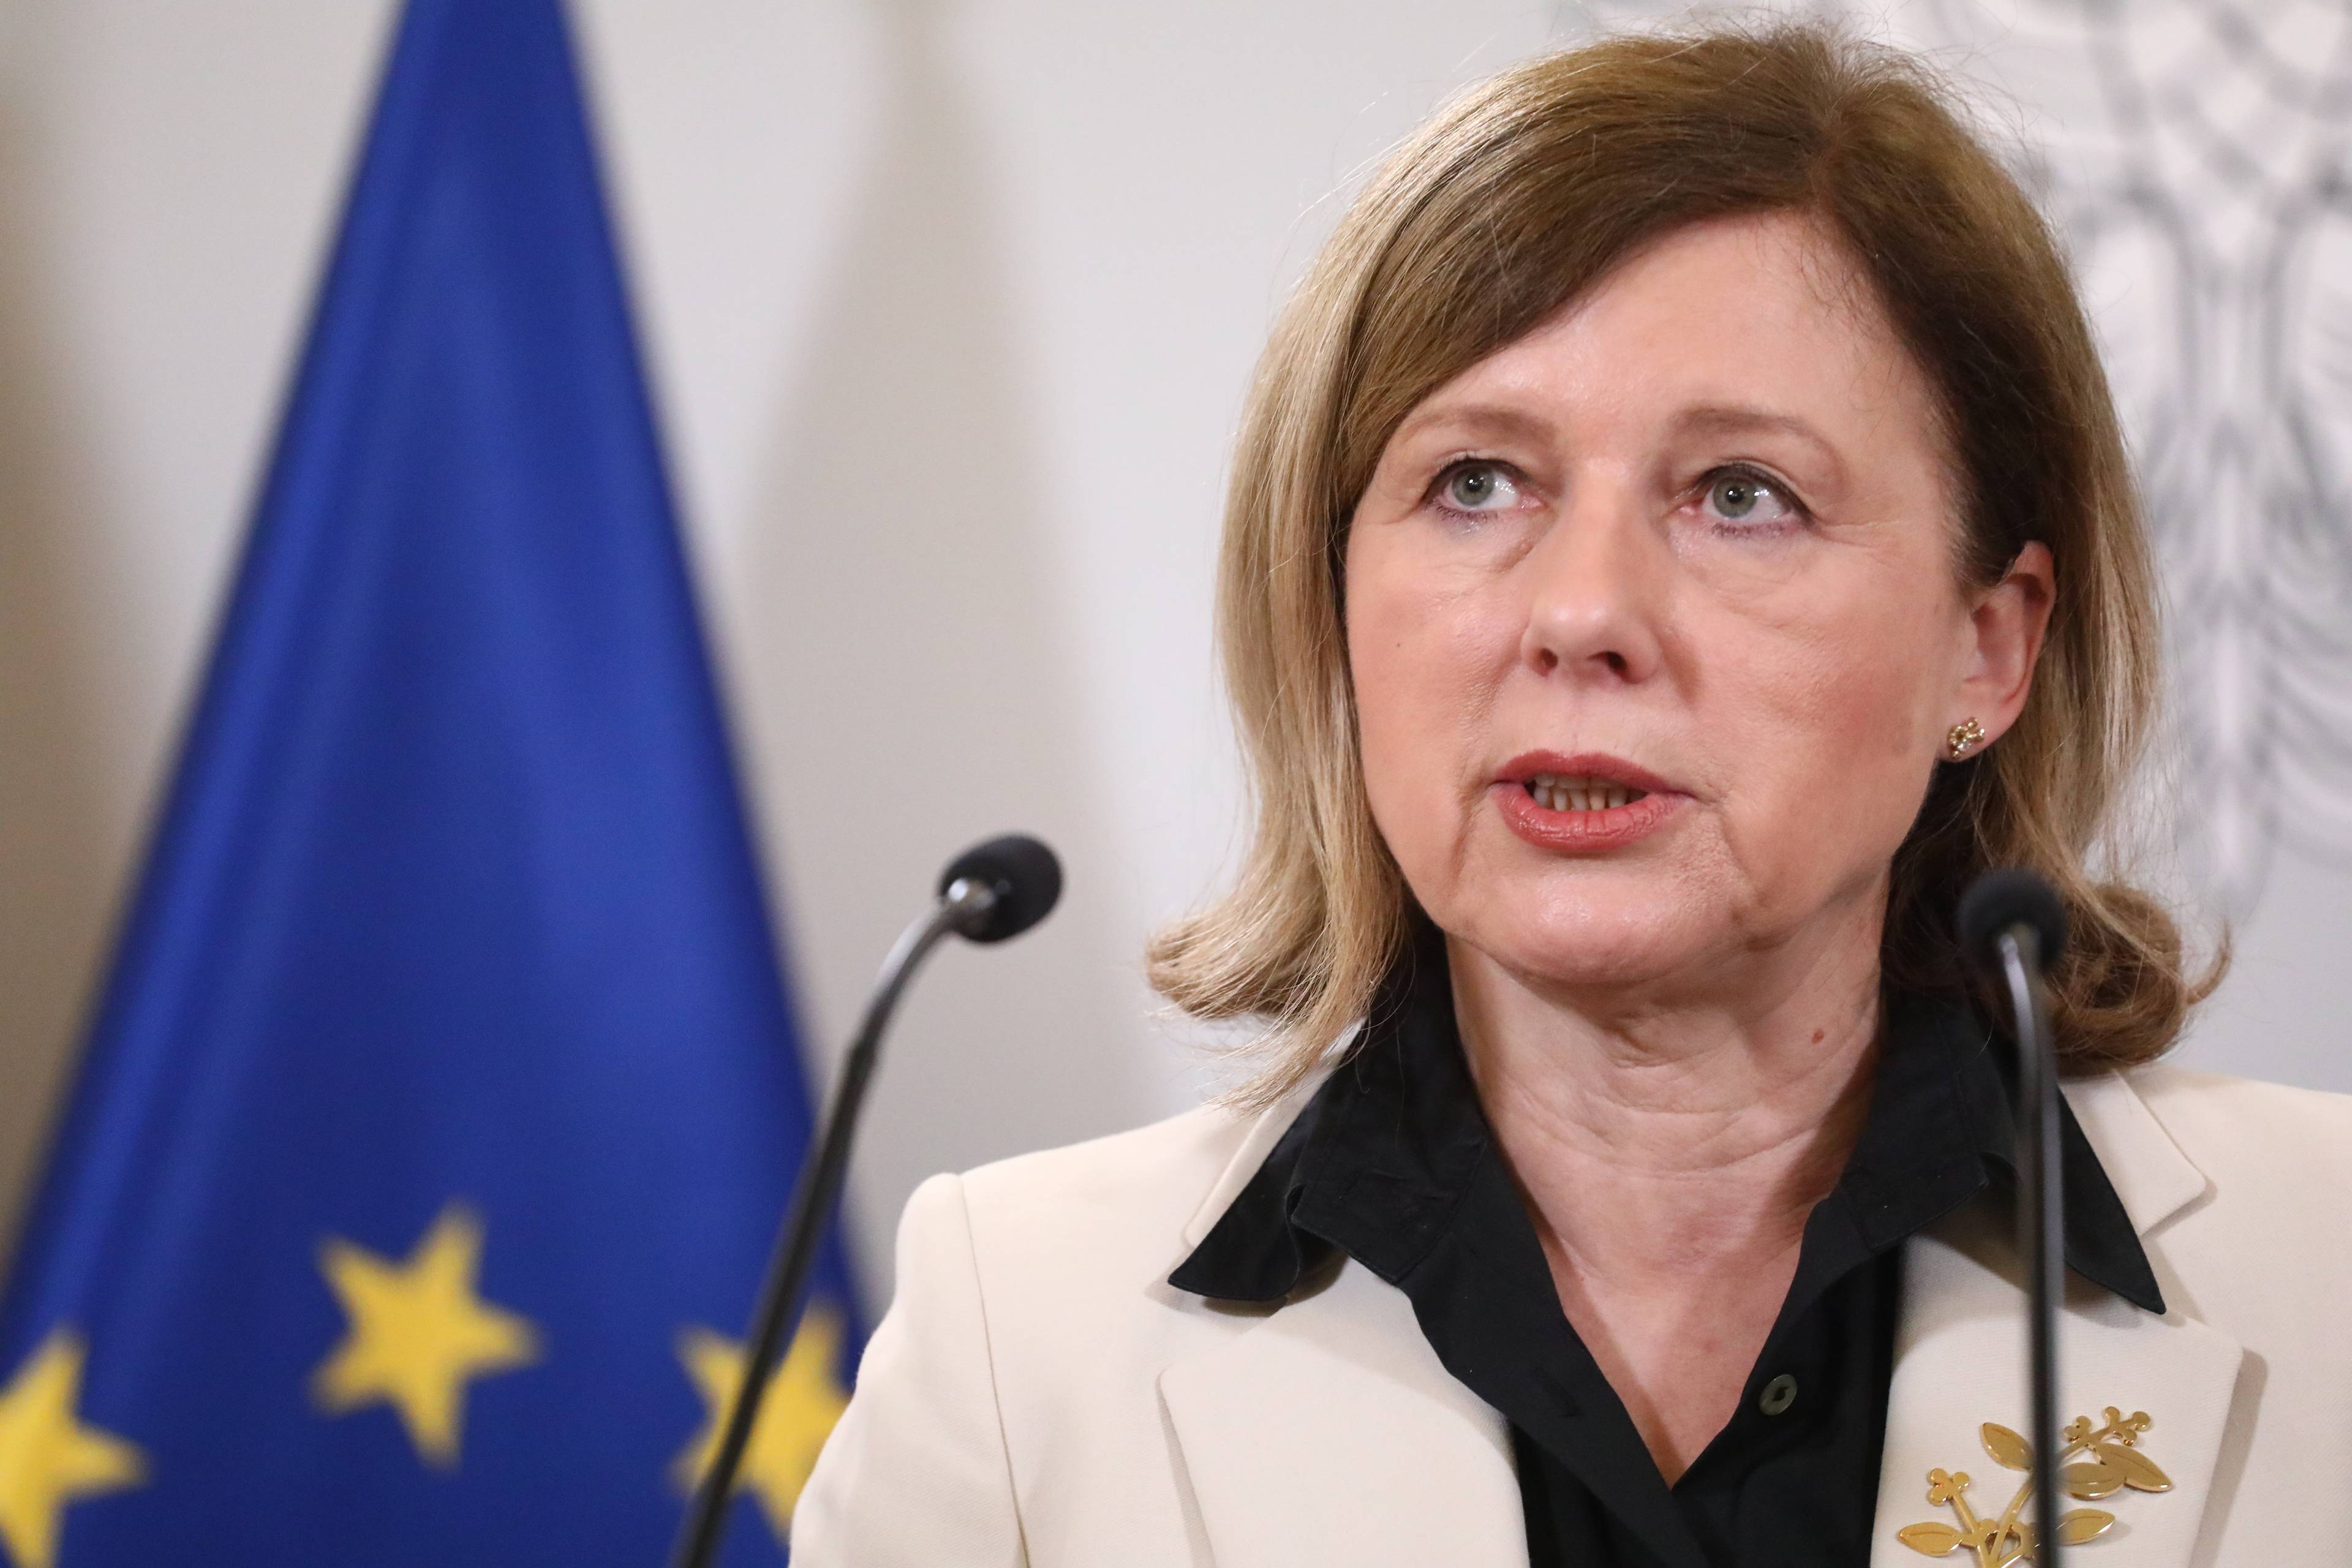 Vera Jourová podczas konferencji prasowej na tle flagi Unii Europejskiej